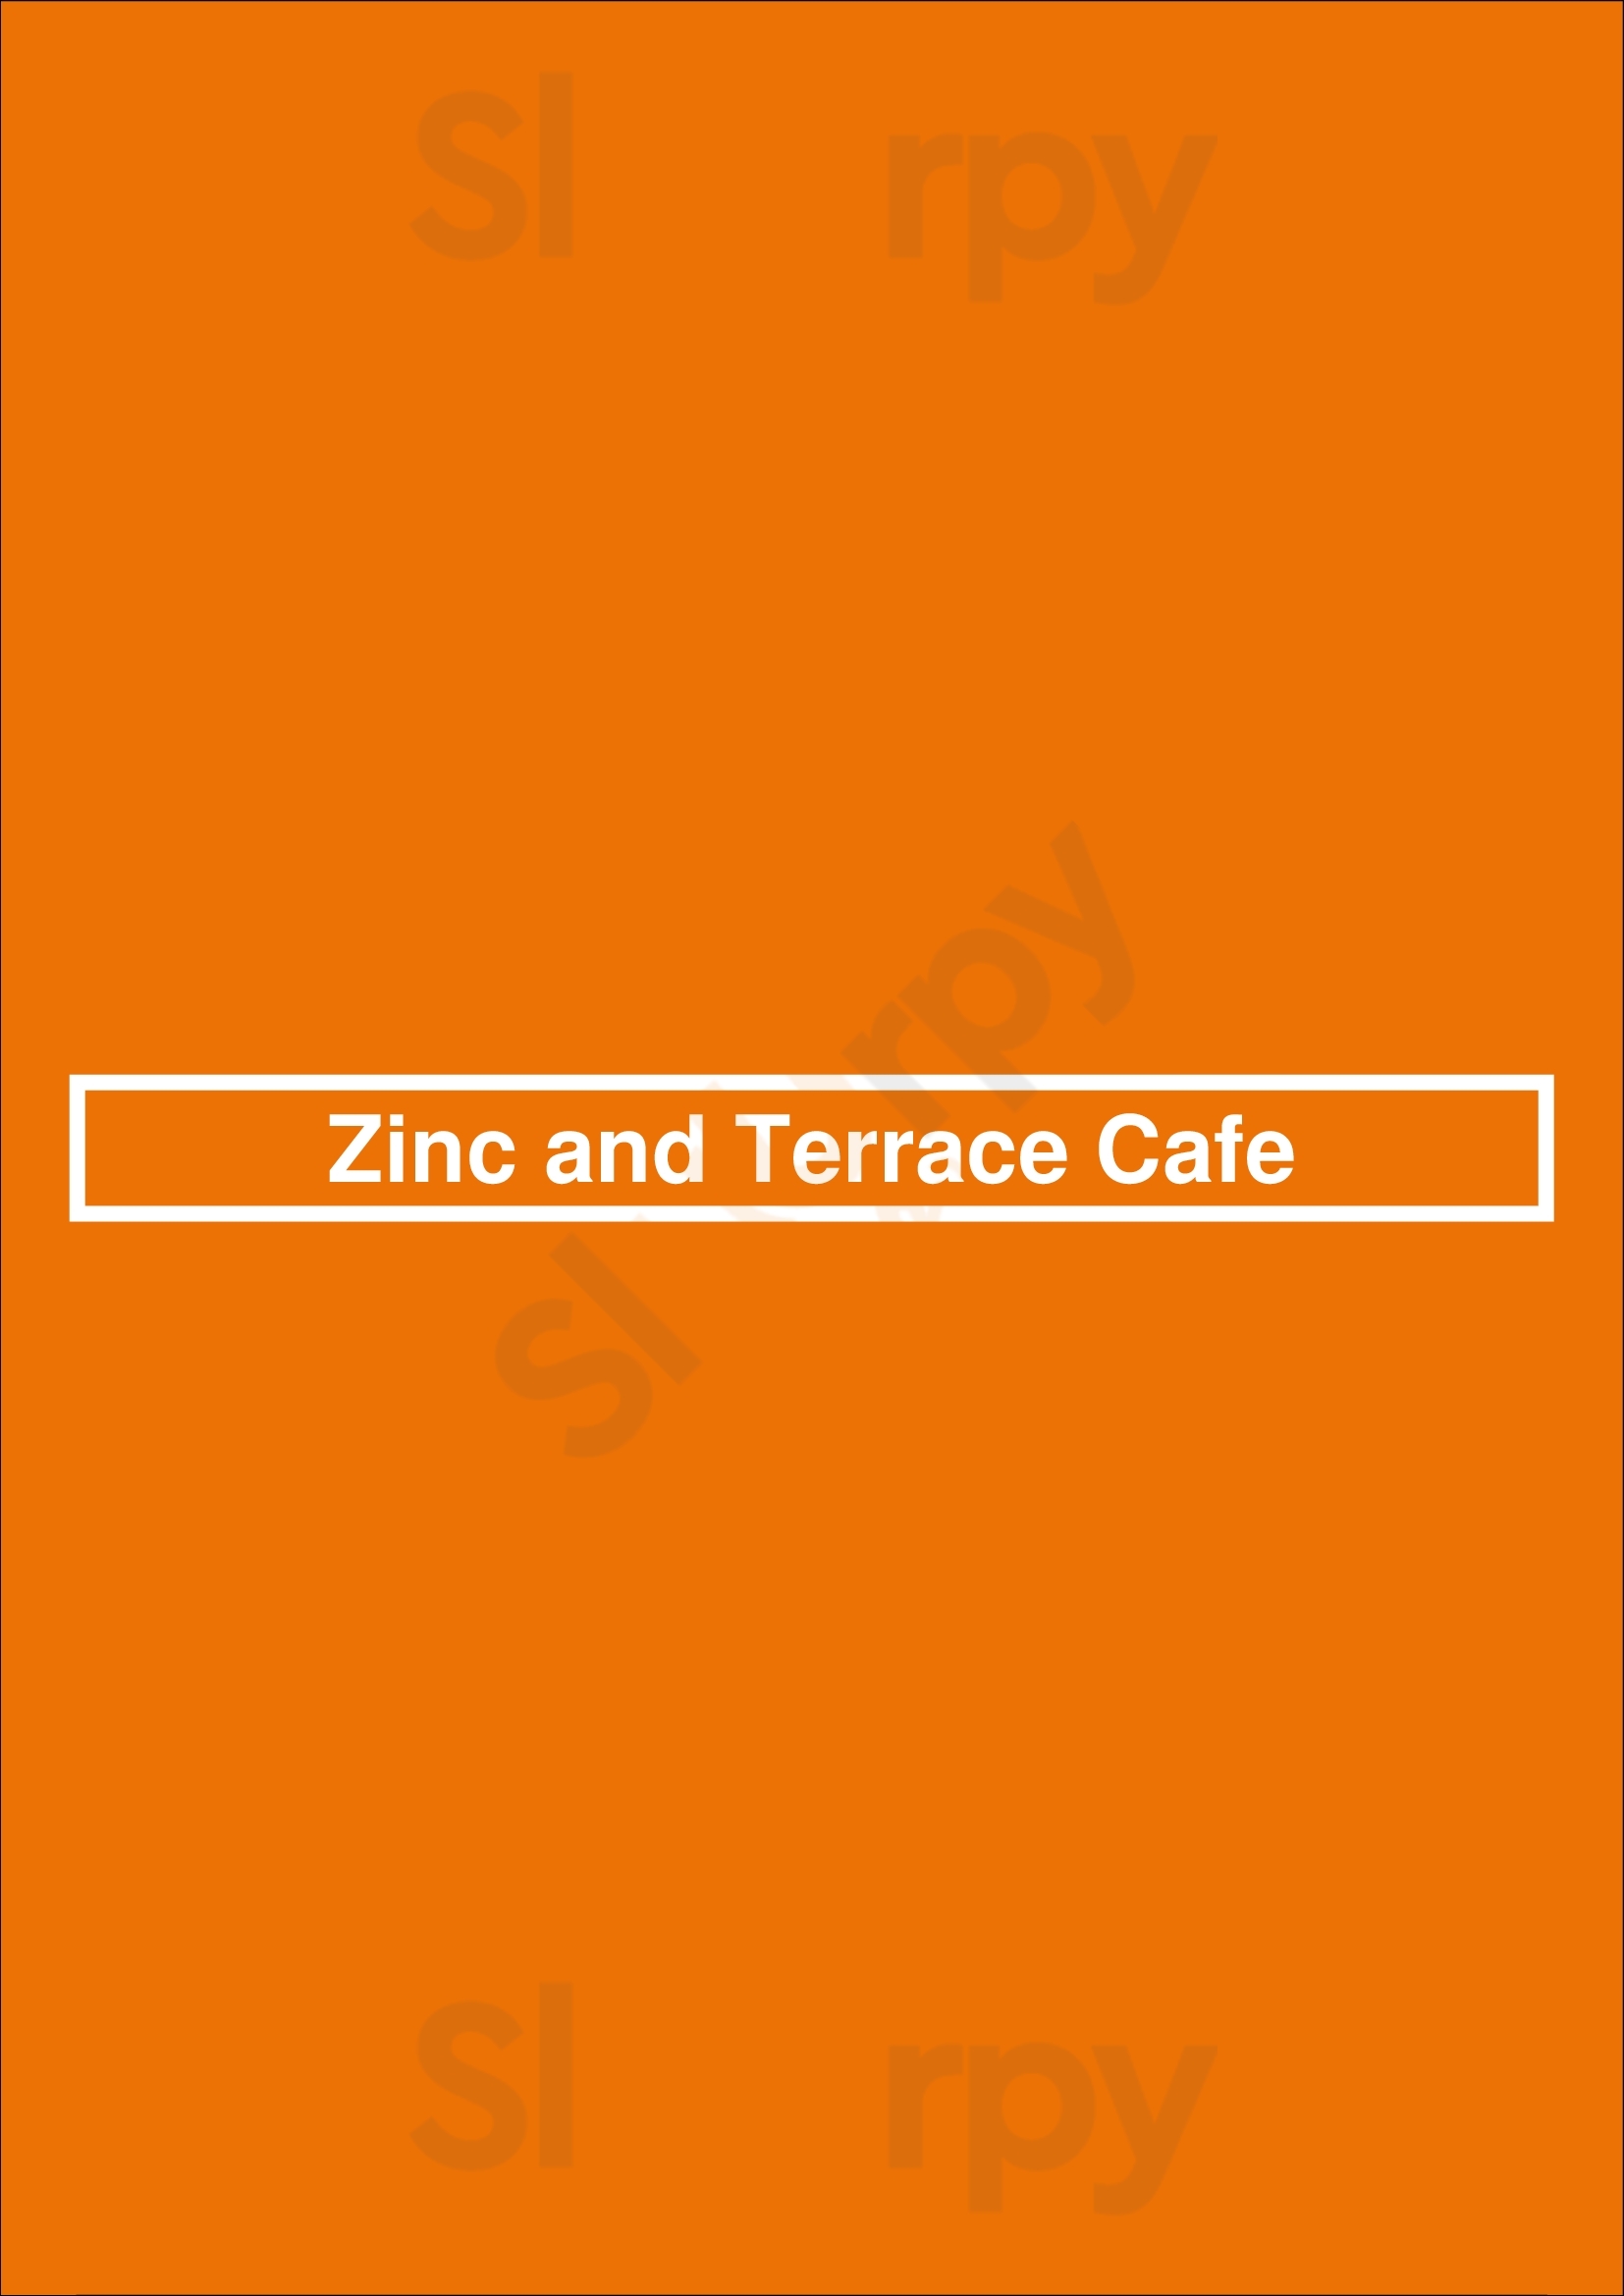 Zinc And Terrace Cafe Edmonton Menu - 1